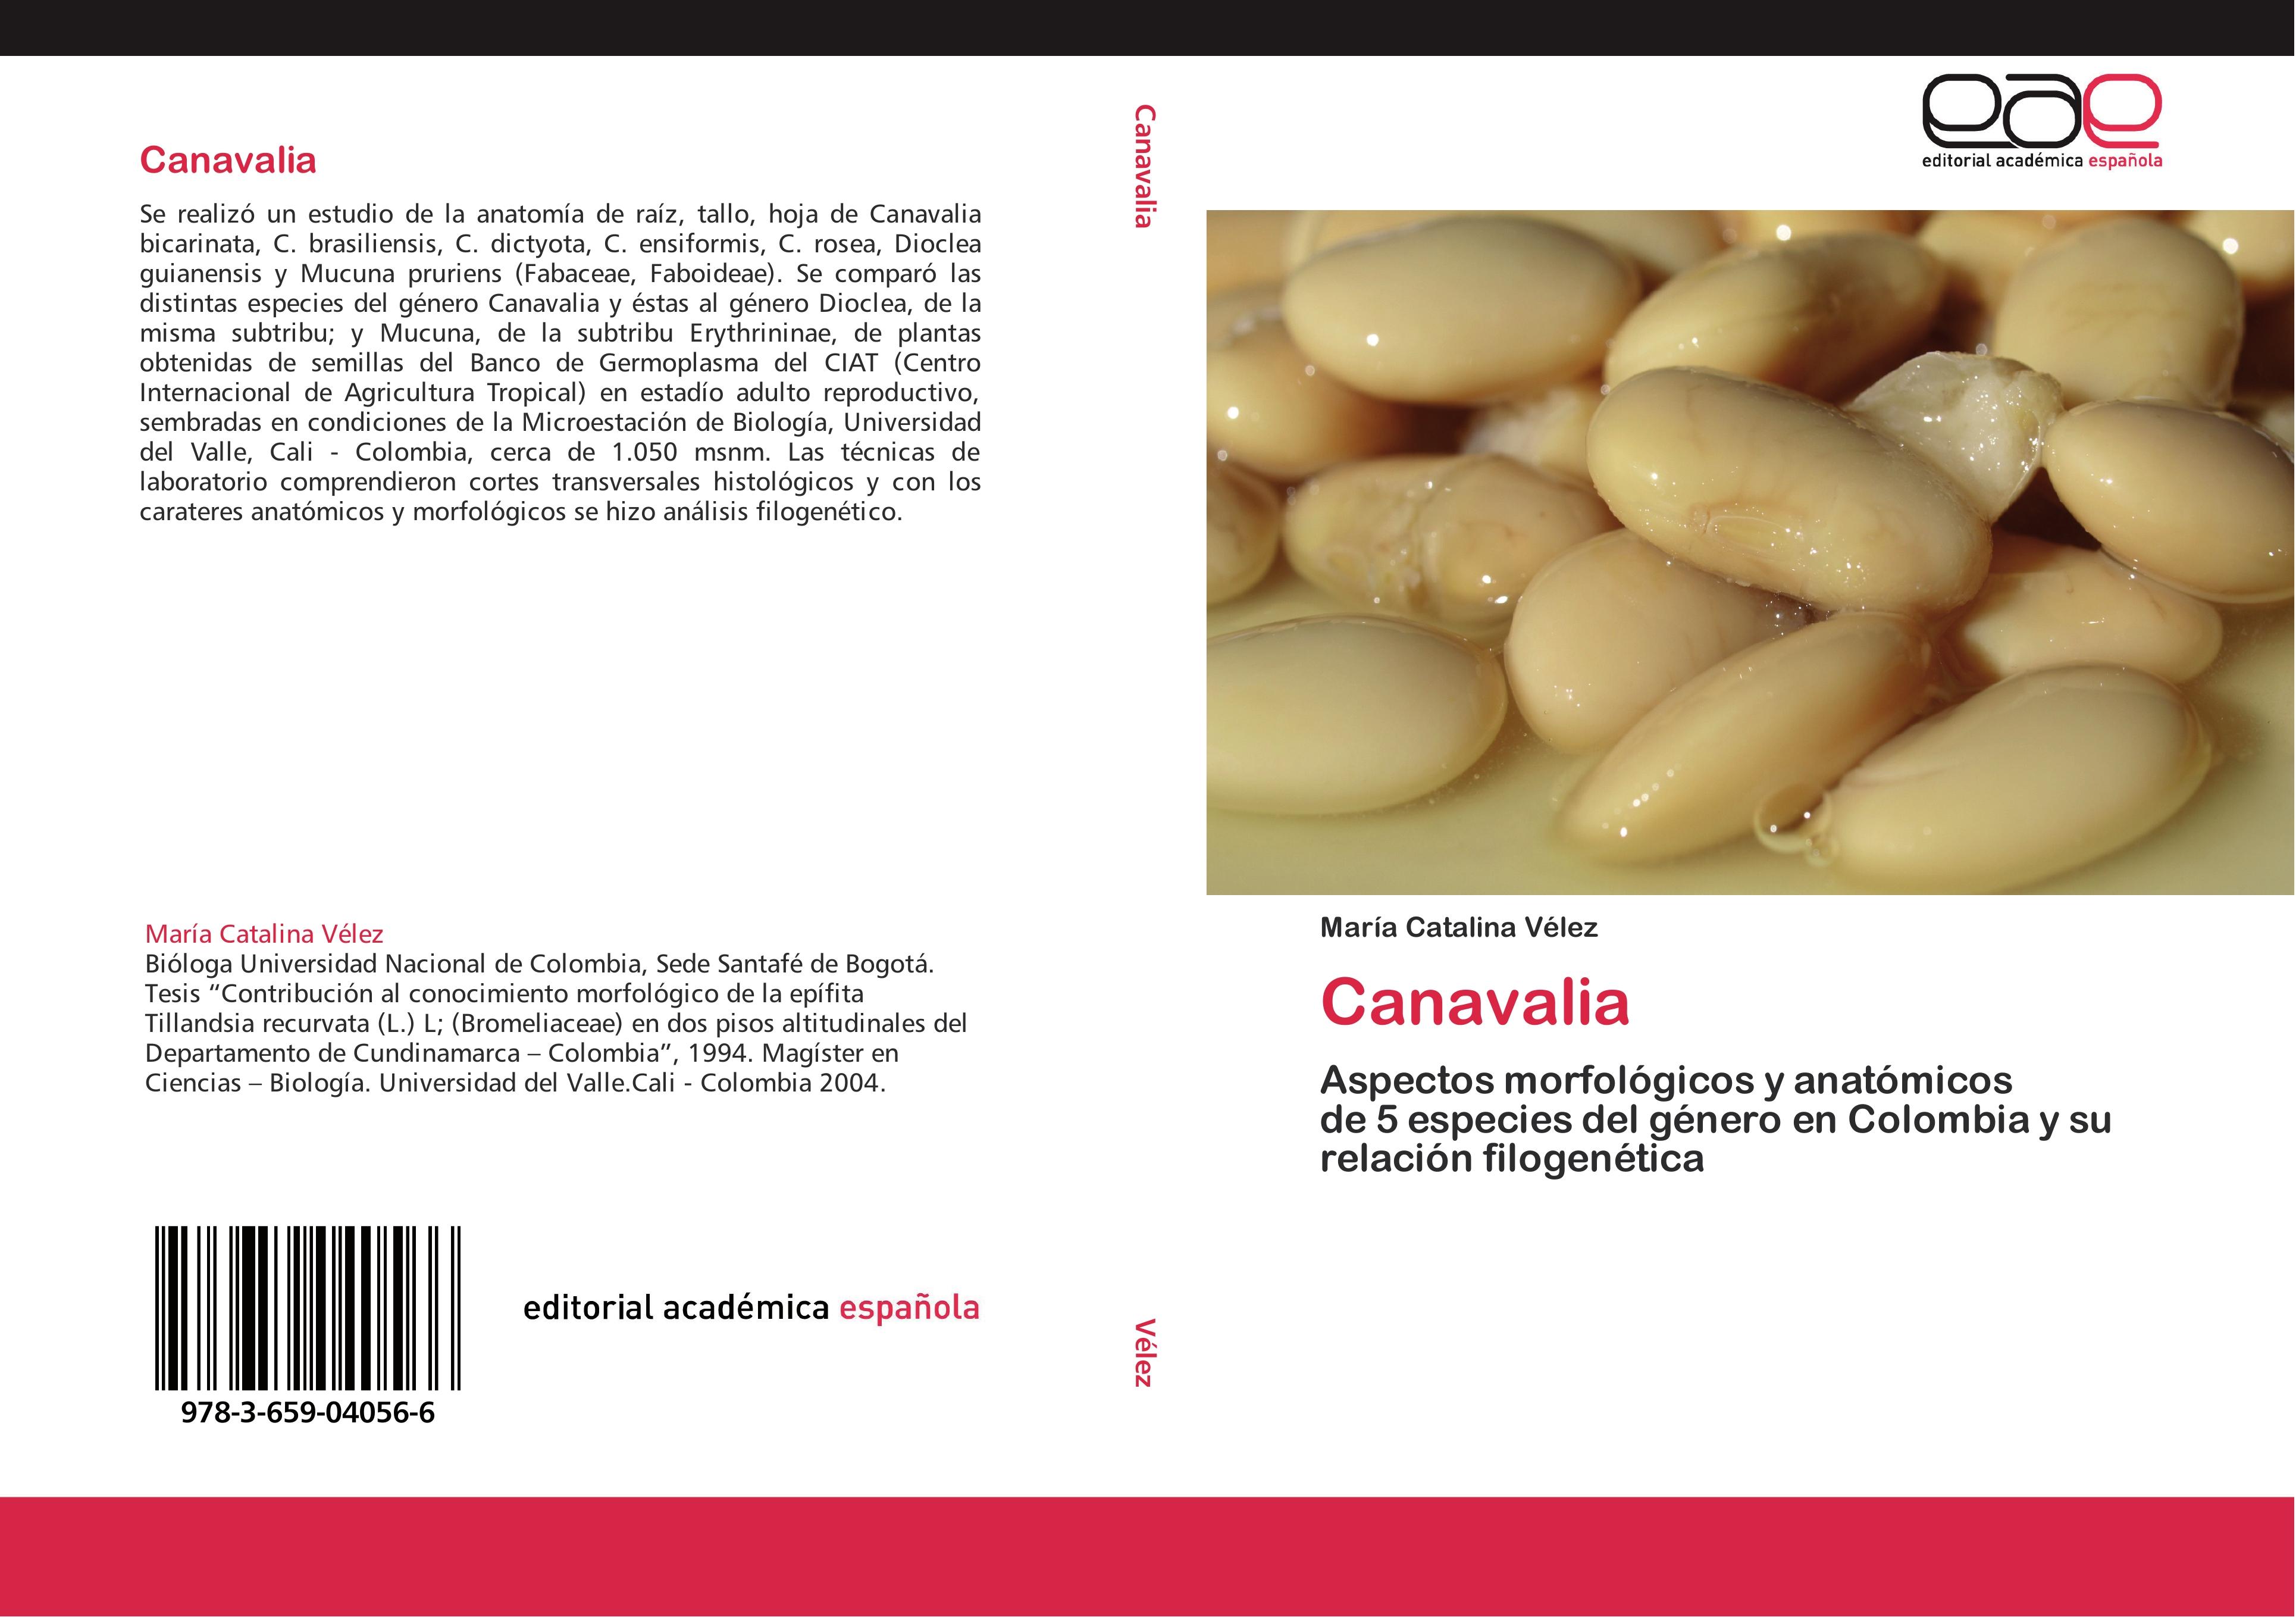 Canavalia / Aspectos morfológicos y anatómicos de 5 especies del género en Colombia y su relación filogenética / María Catalina Vélez / Taschenbuch / Paperback / 276 S. / Spanisch / 2012 - Vélez, María Catalina